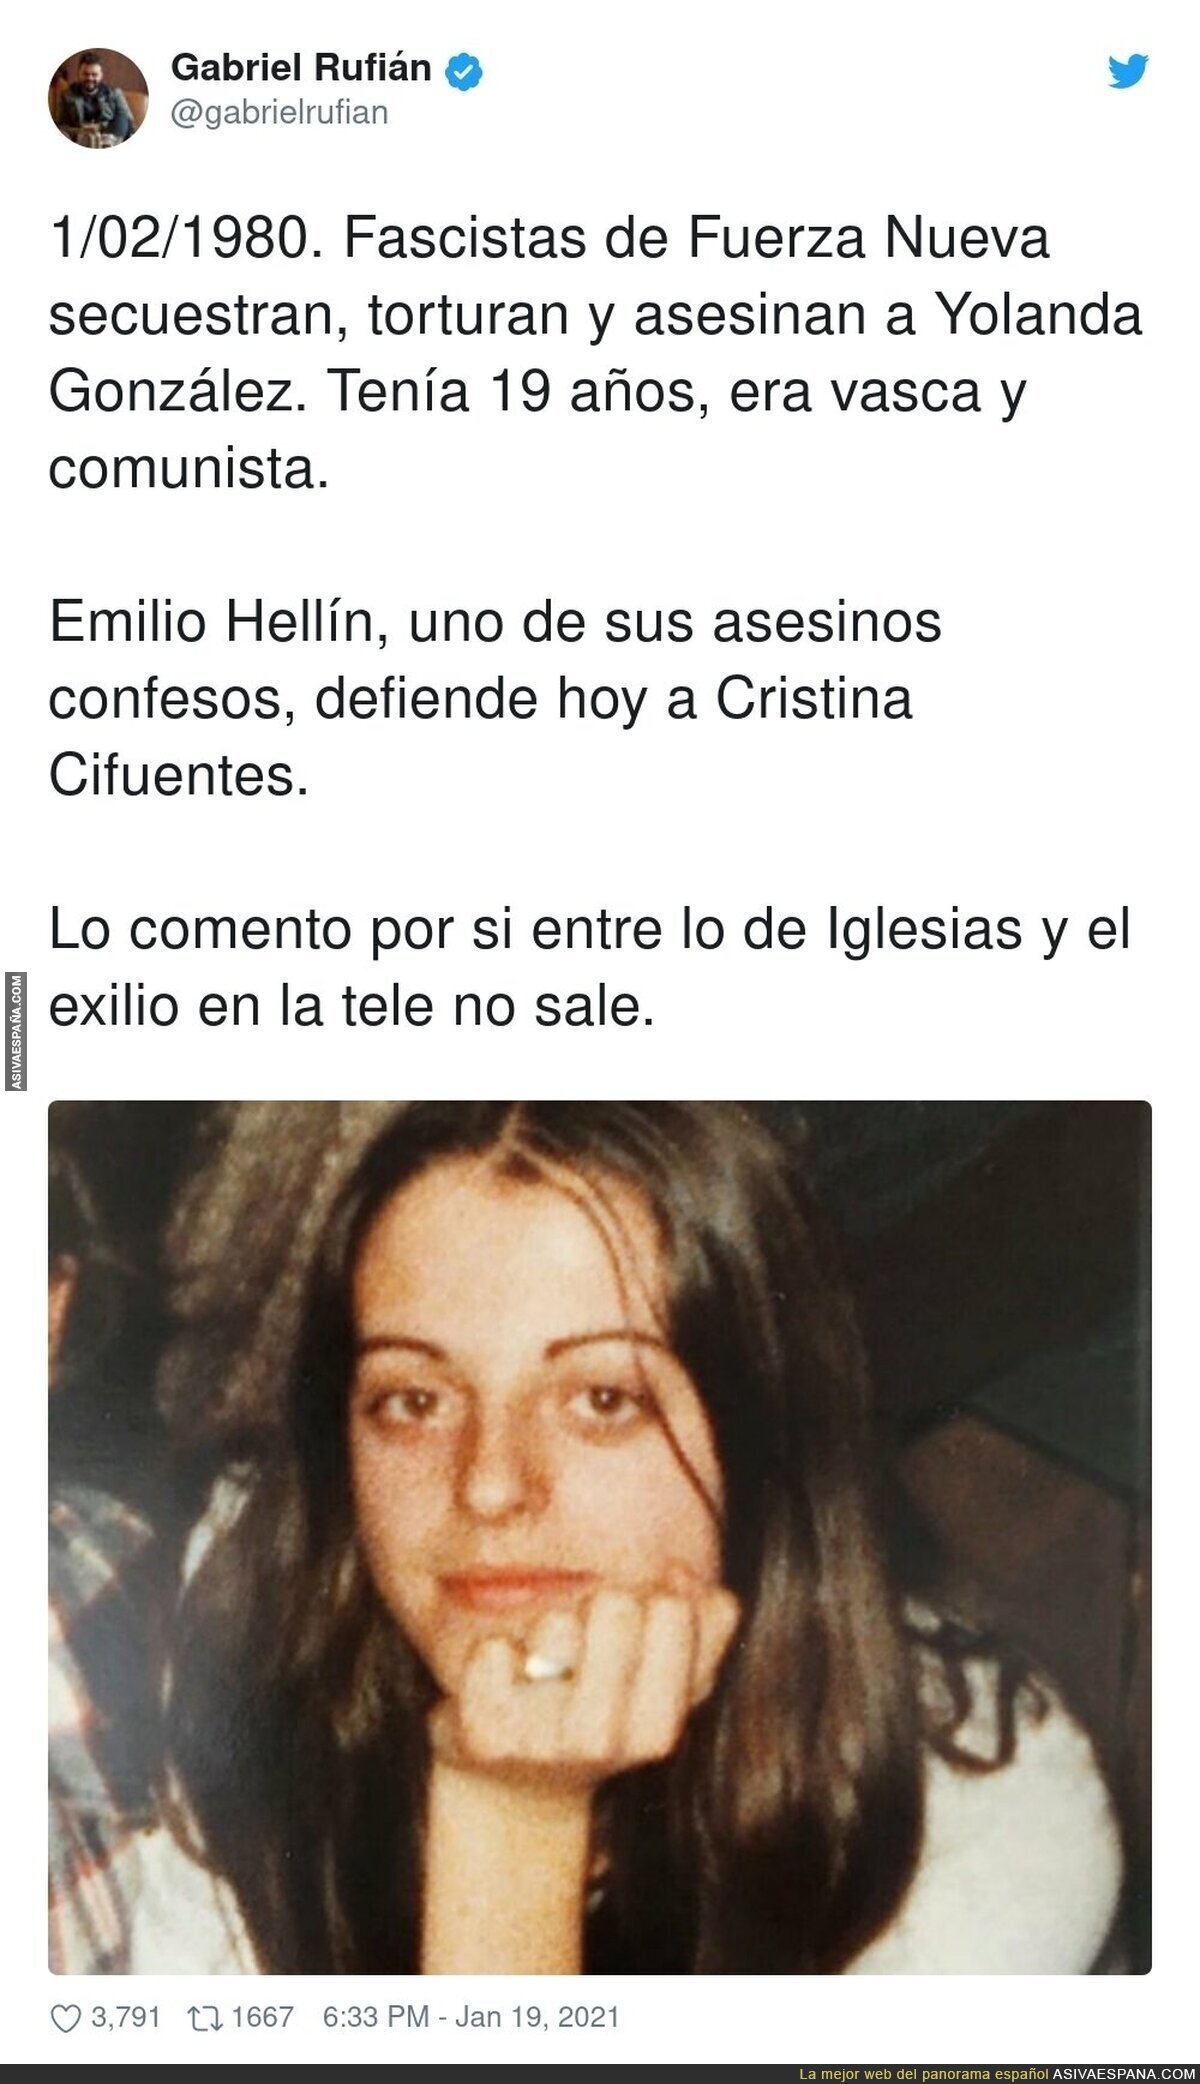 El oscuro pasado de los defensores de Cristina Cifuentes